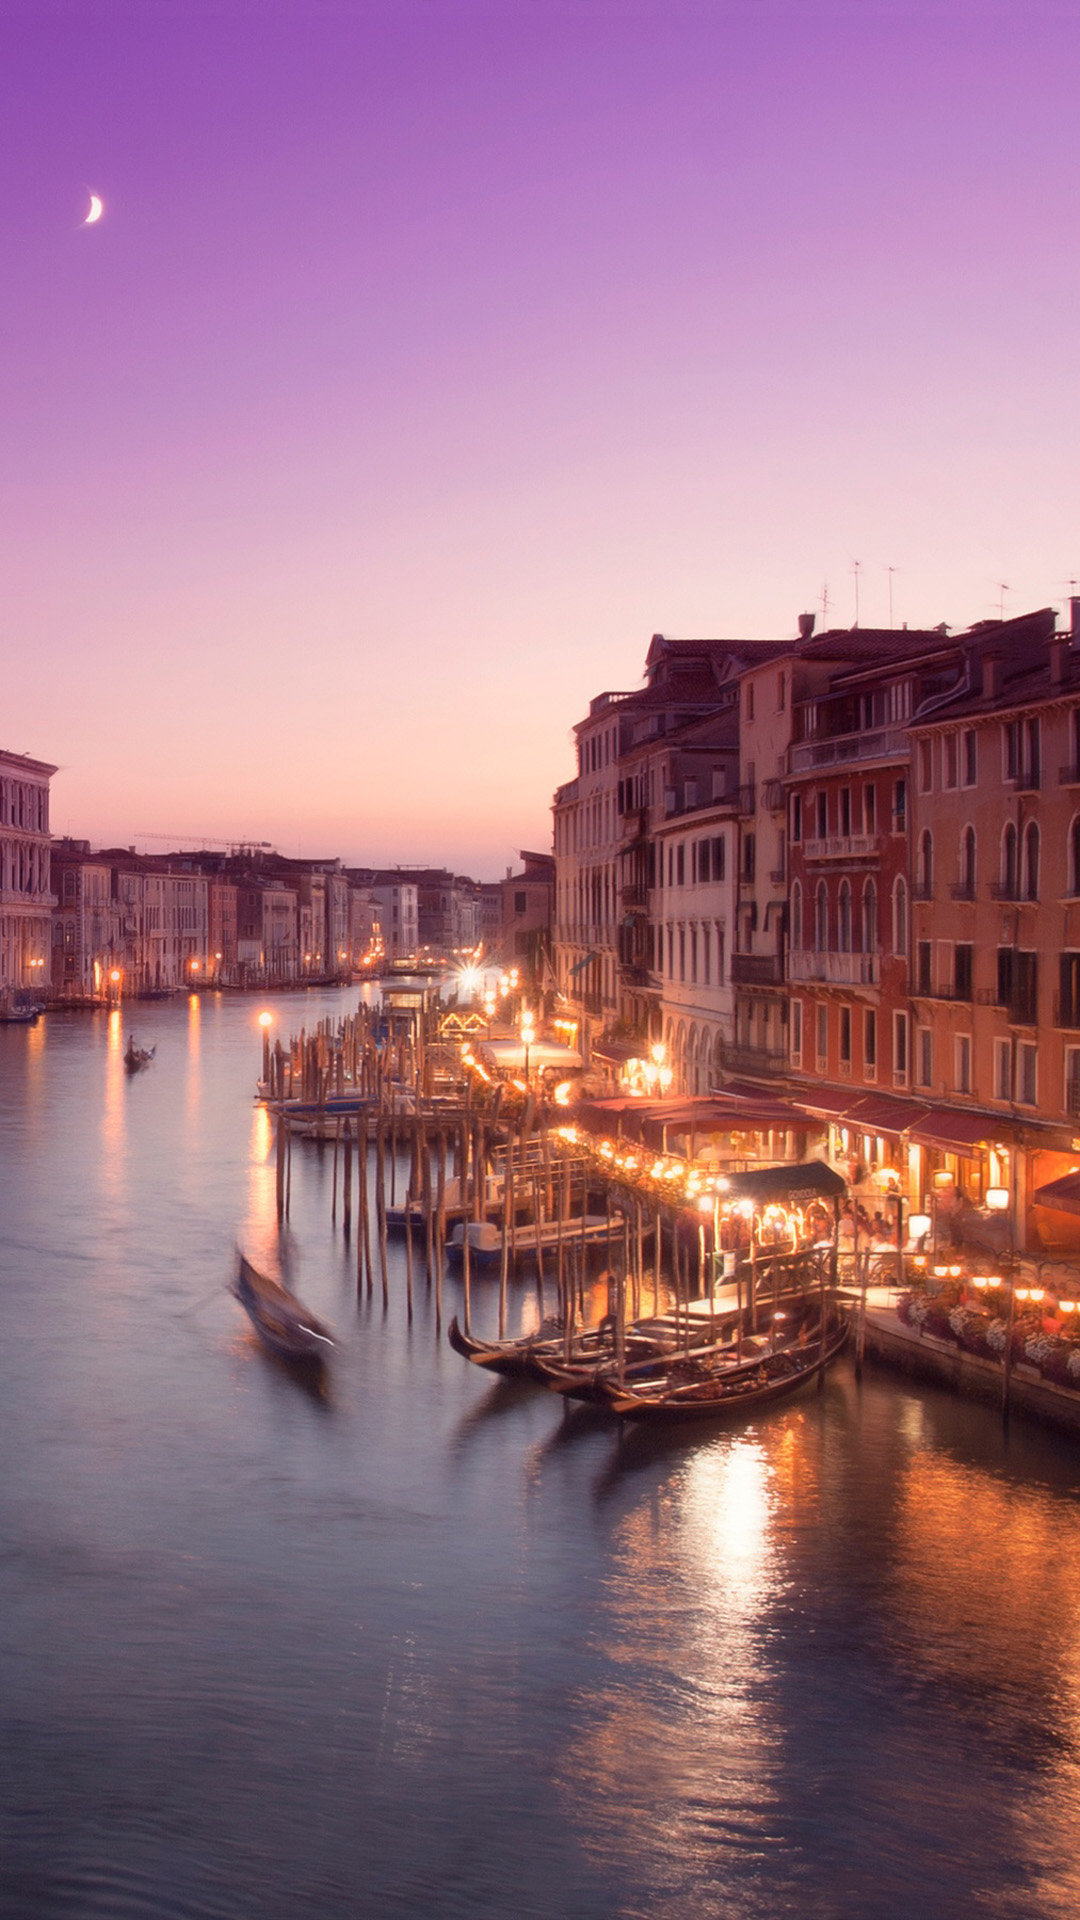 ヴェネツィアの美しい夜景 おしゃれな夜景のiphone壁紙 Iphone12 スマホ壁紙 待受画像ギャラリー